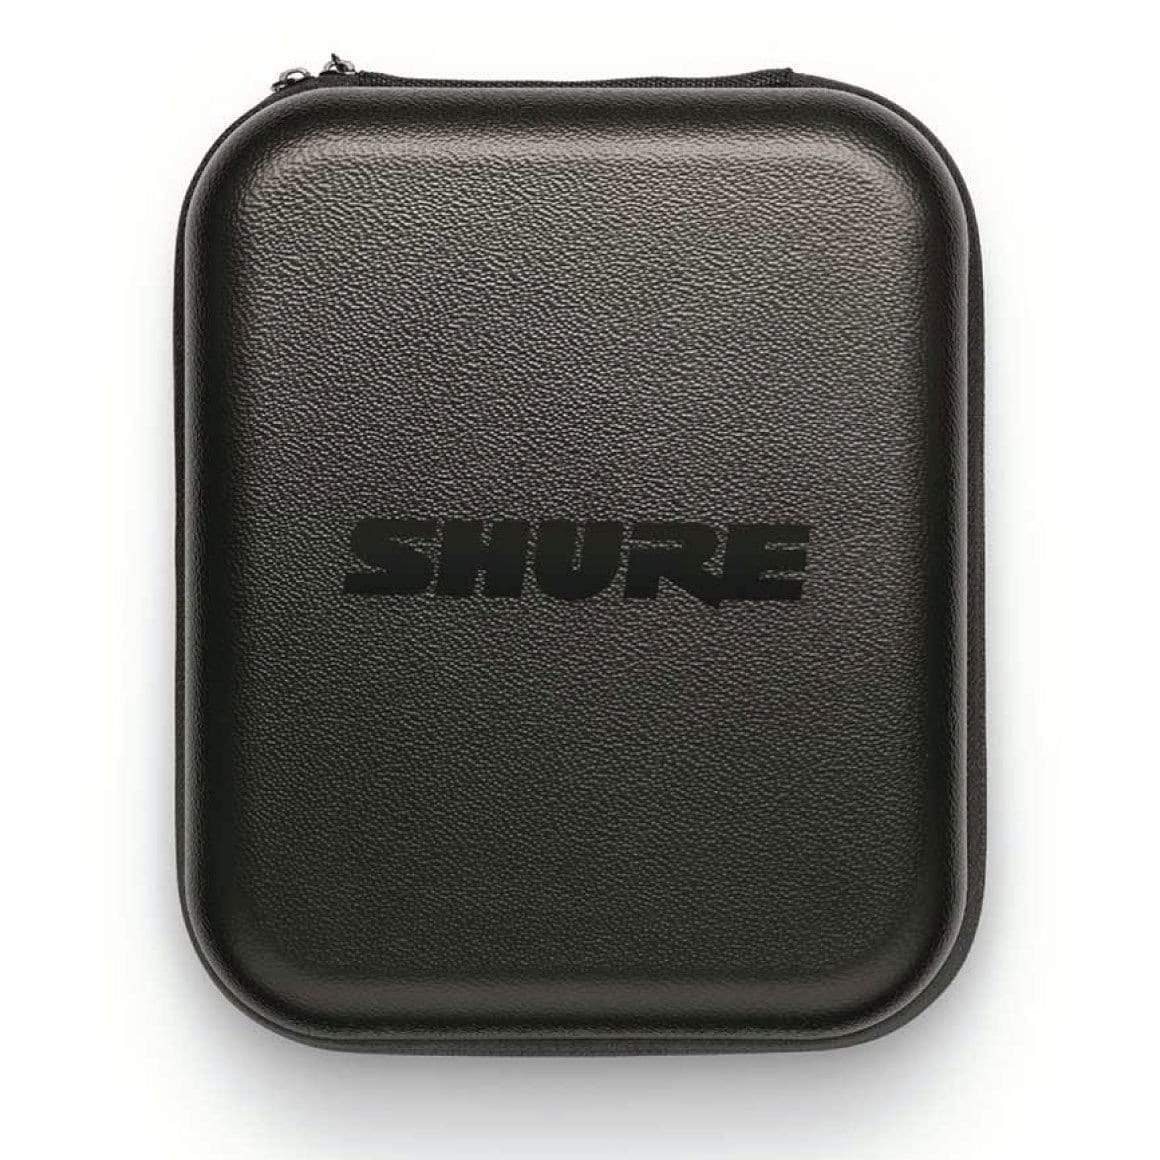 Shure - SRH1540